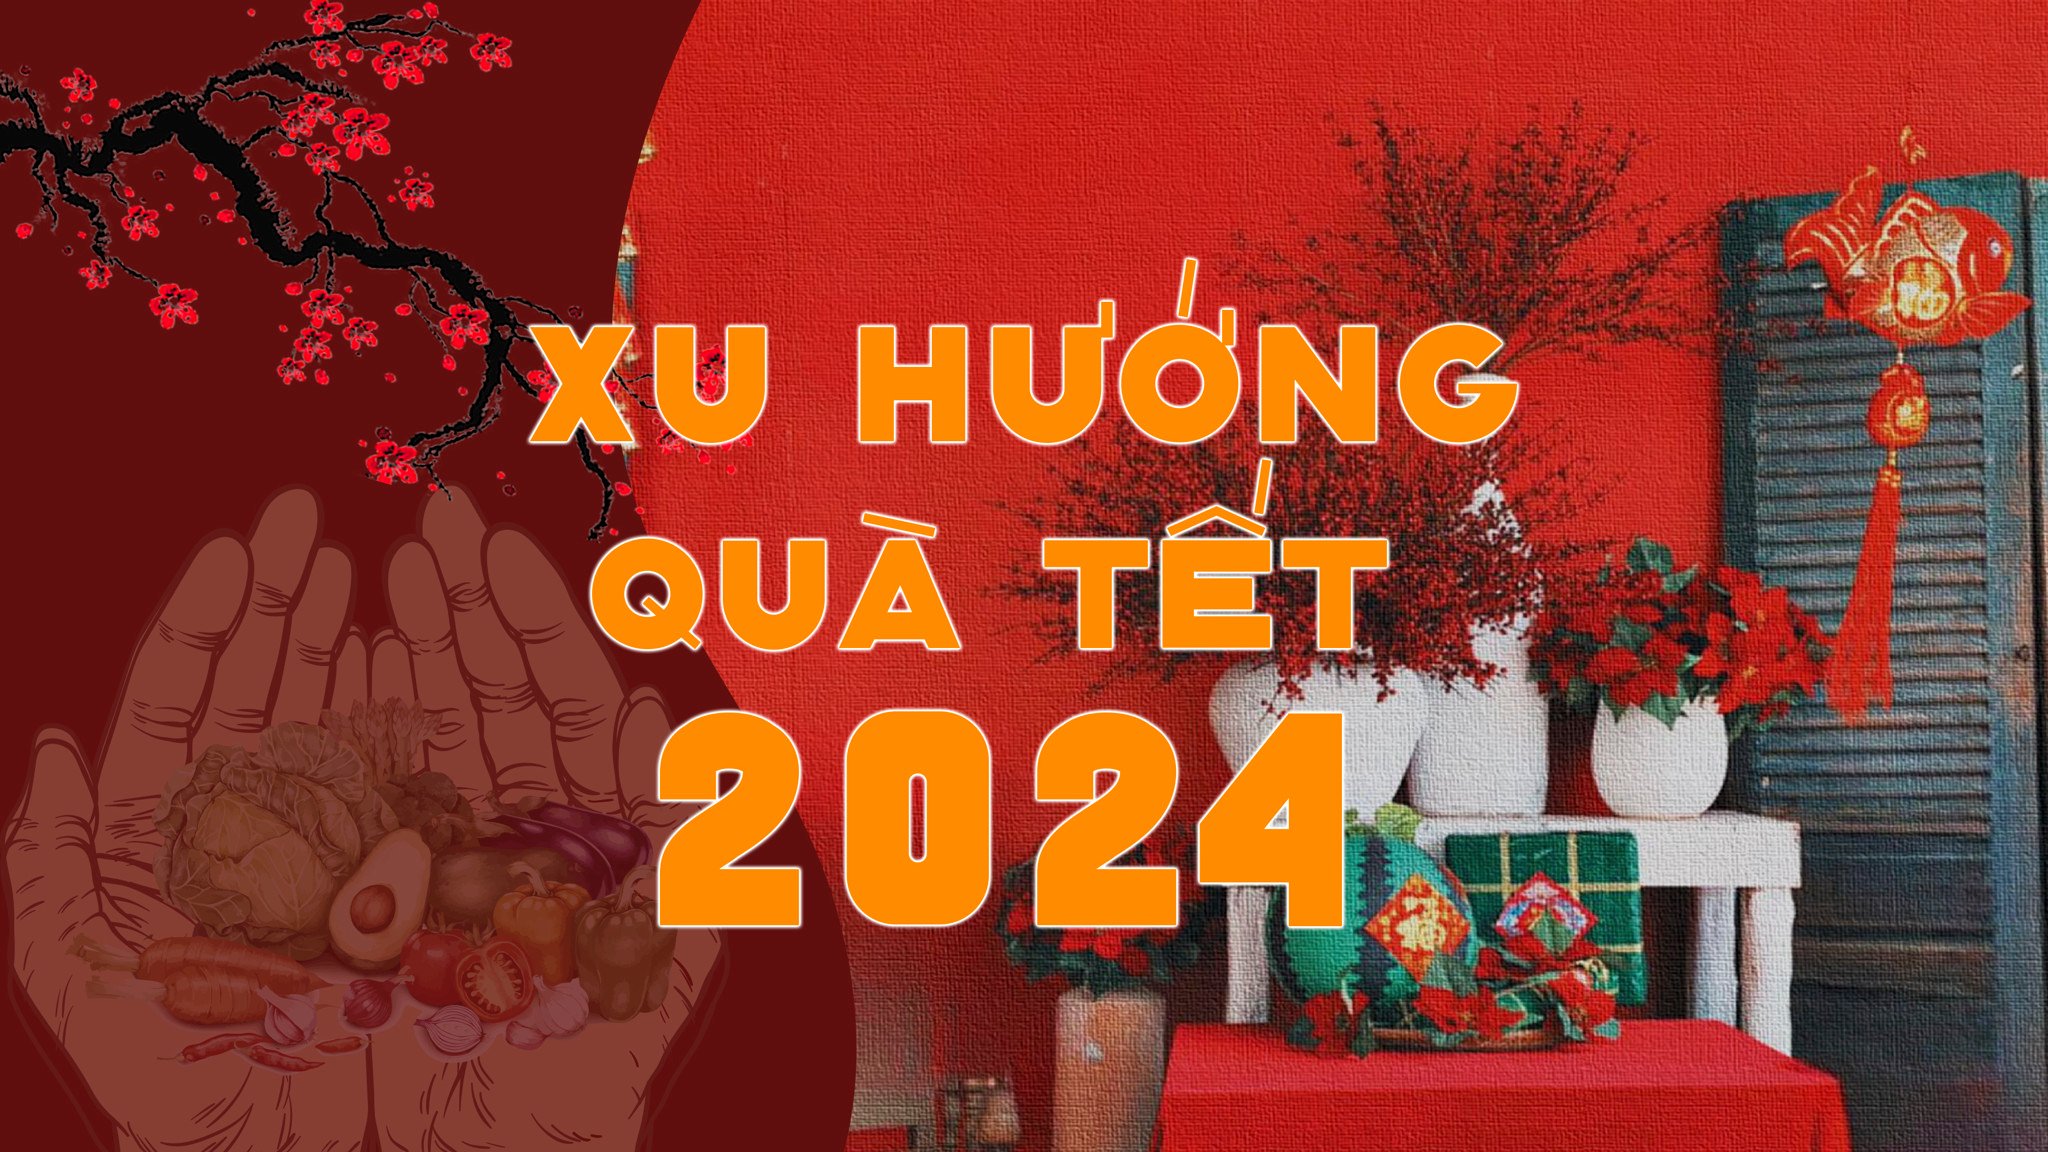 Xu Huong Qua Tet 2024 32d206f32c8146008b550a1a6673d2a7 